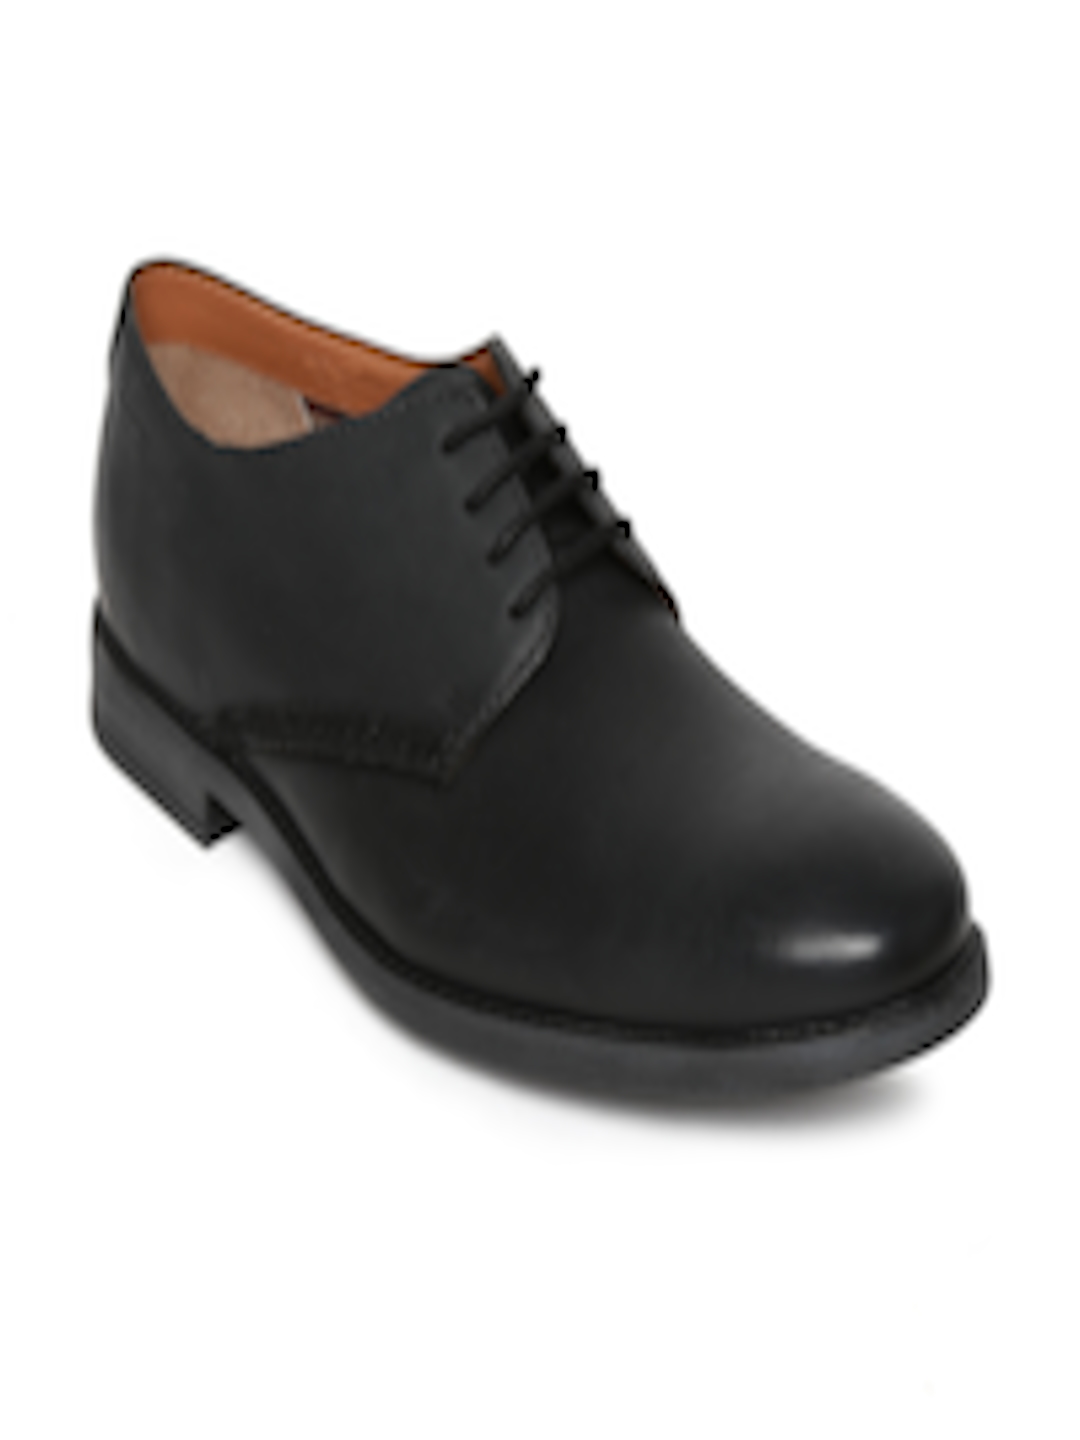 Buy Clarks Men Black Leather Derby Formal Shoes - Formal Shoes for Men ...